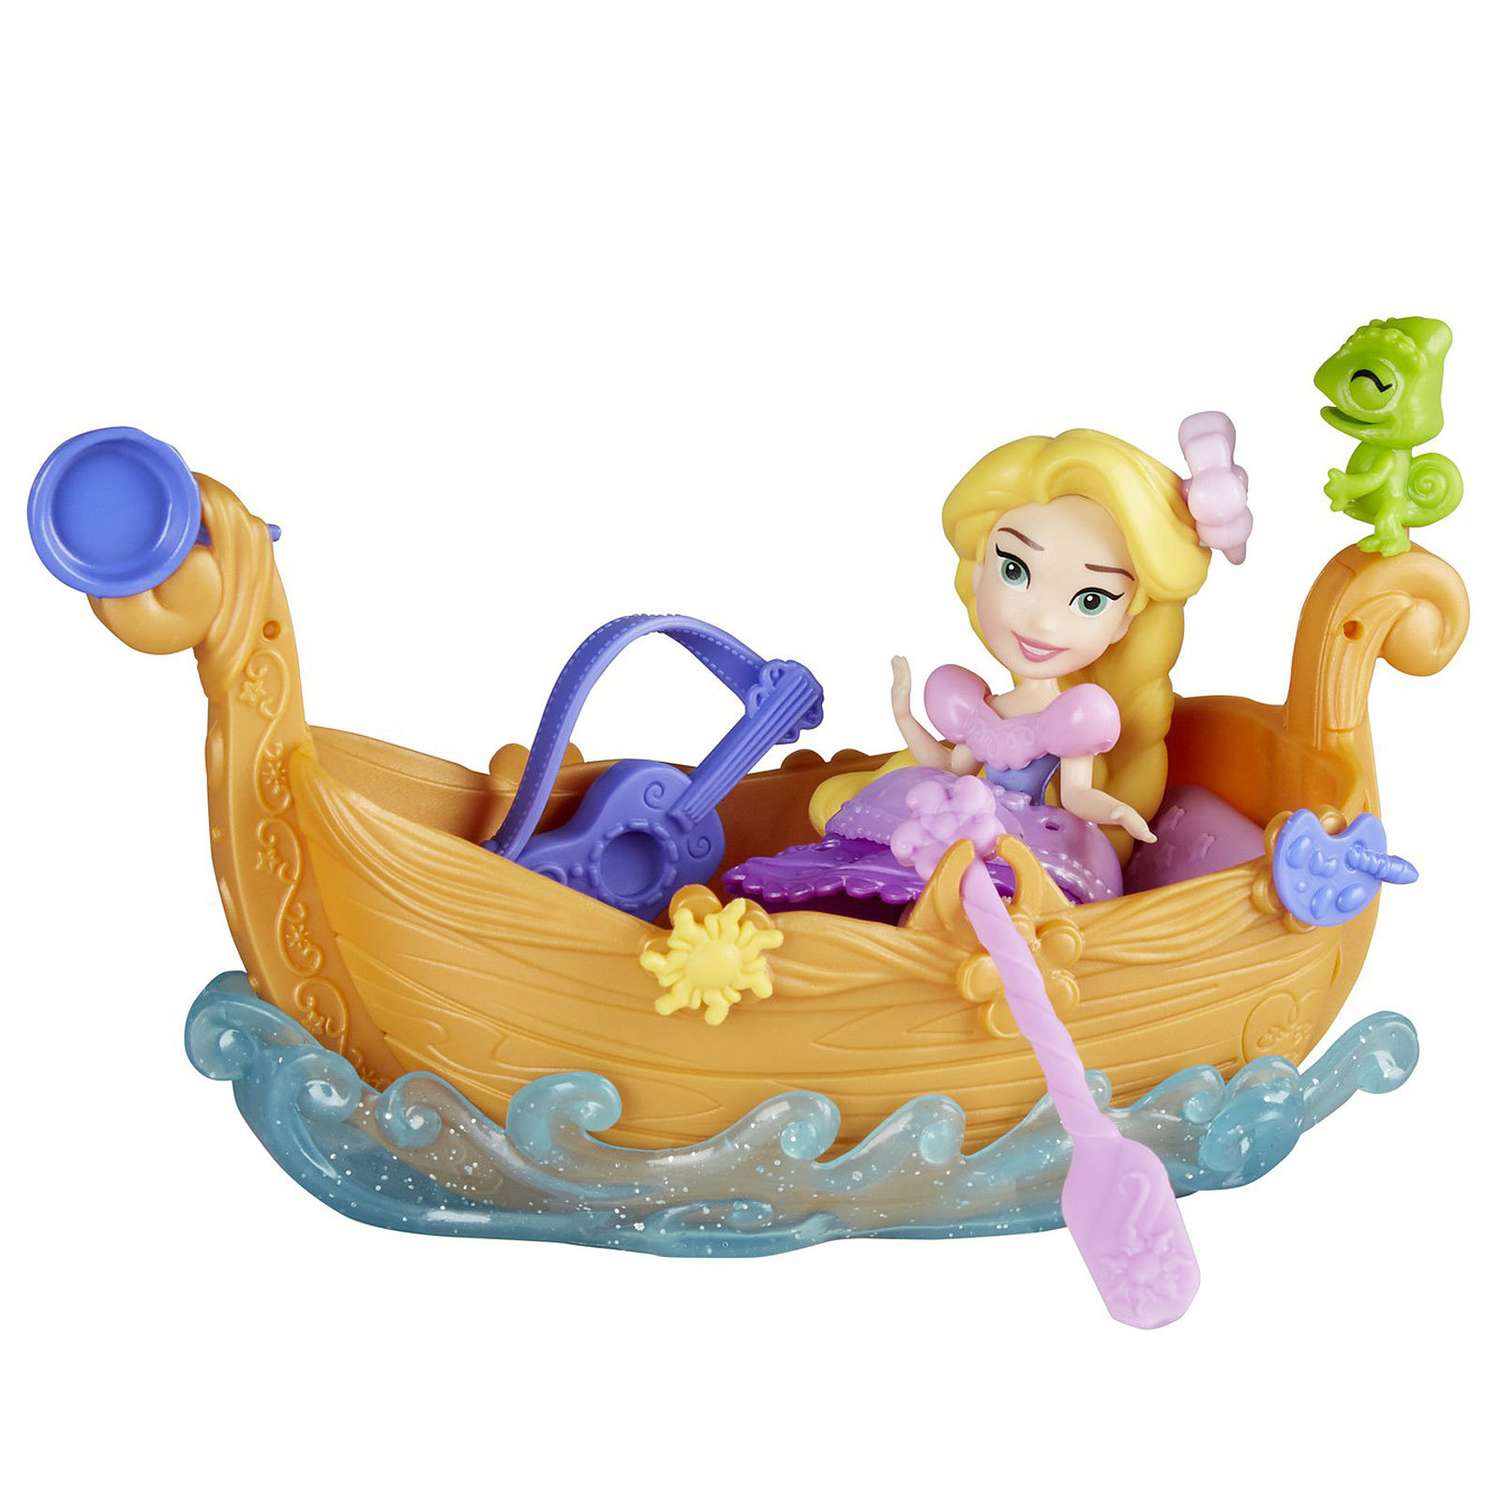 Набор Princess Disney Фигурка и лодка в ассортименте E0068EU4 E0068EU4 - фото 8